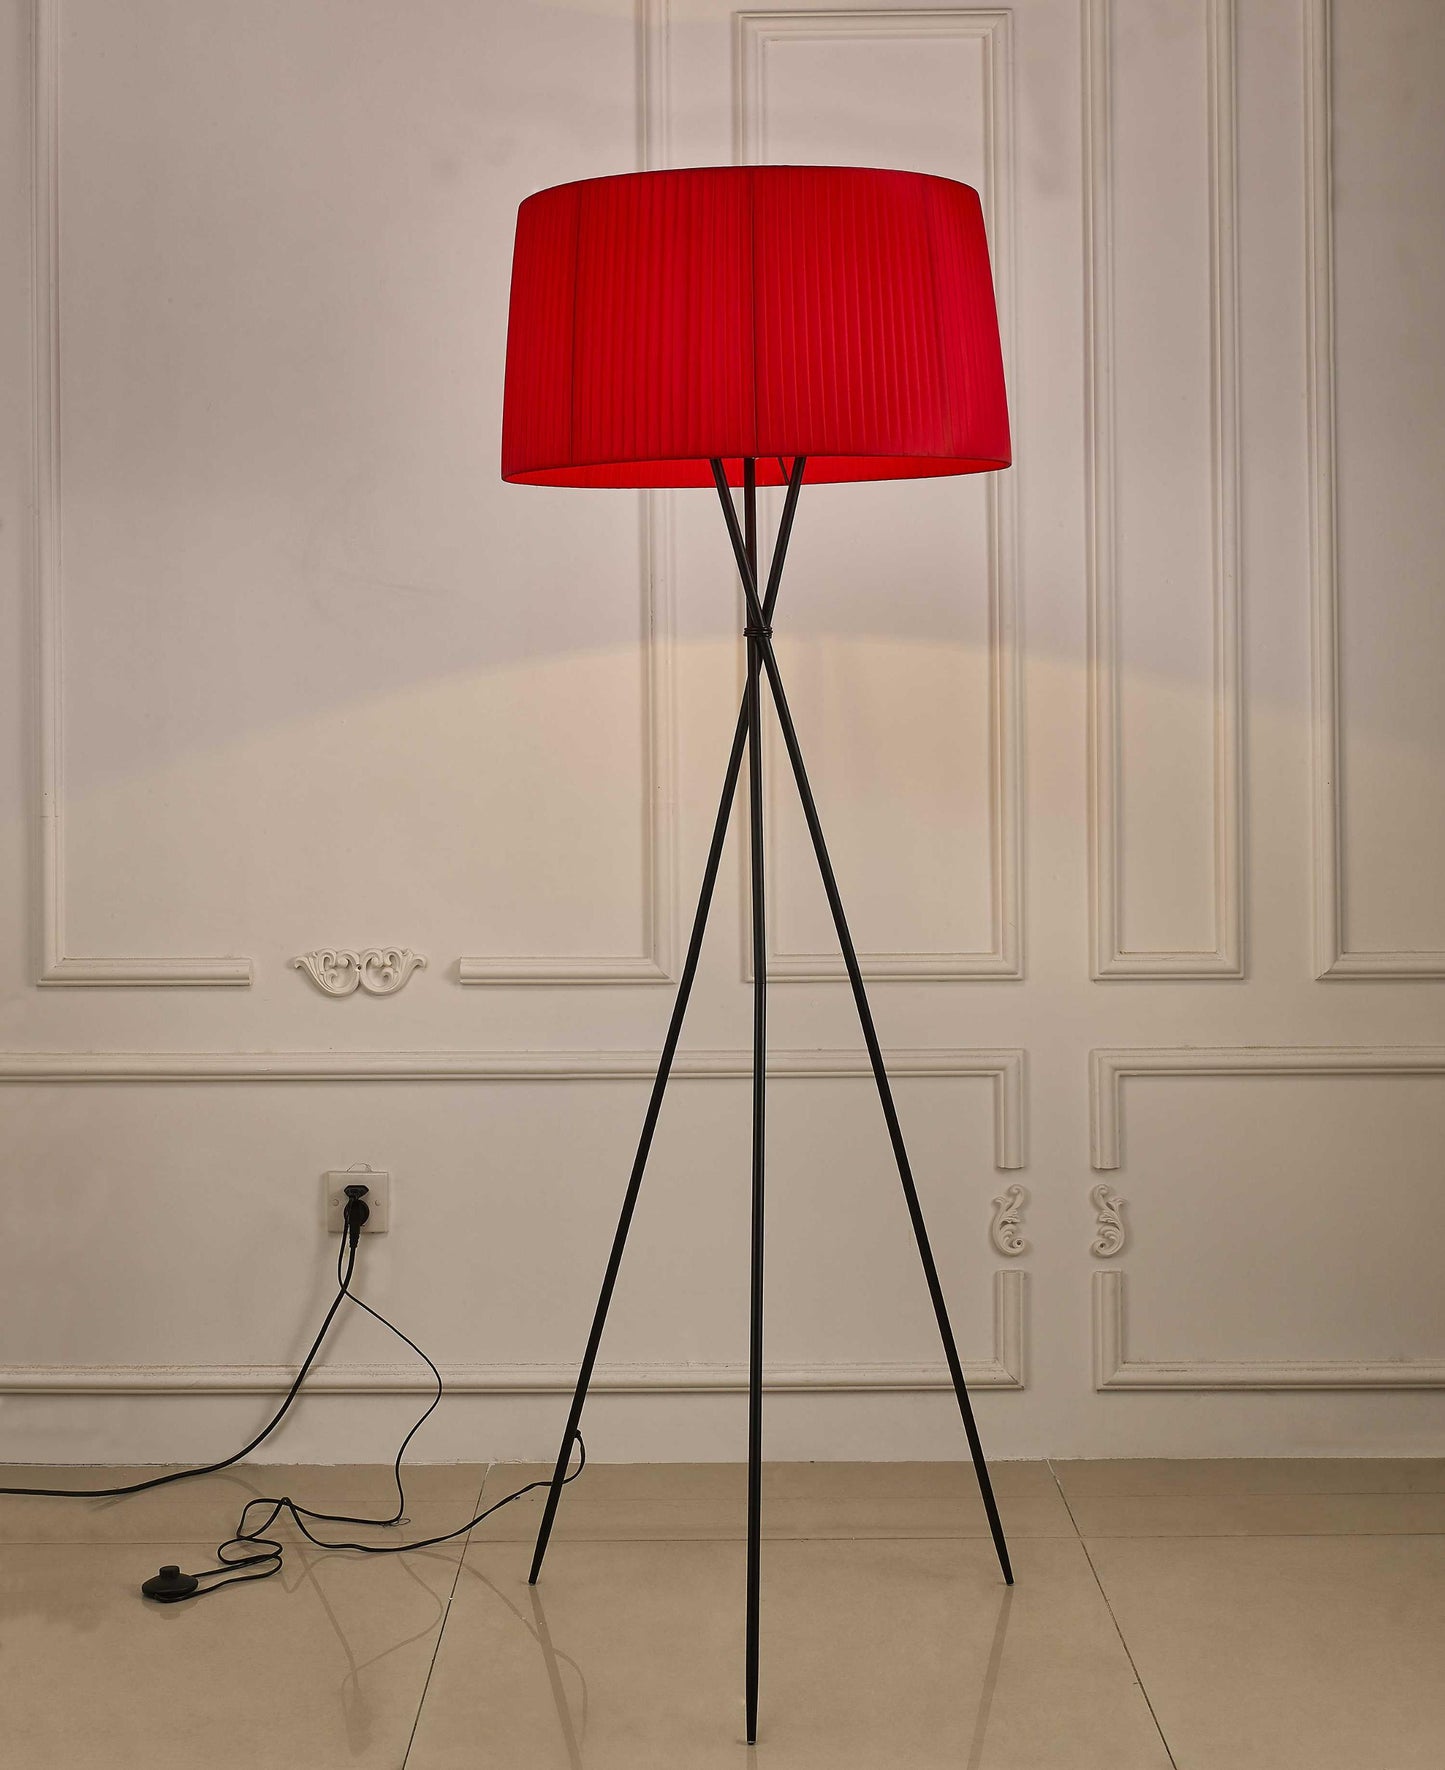 20" X 20" X 69" Red Metal Floor Lamp